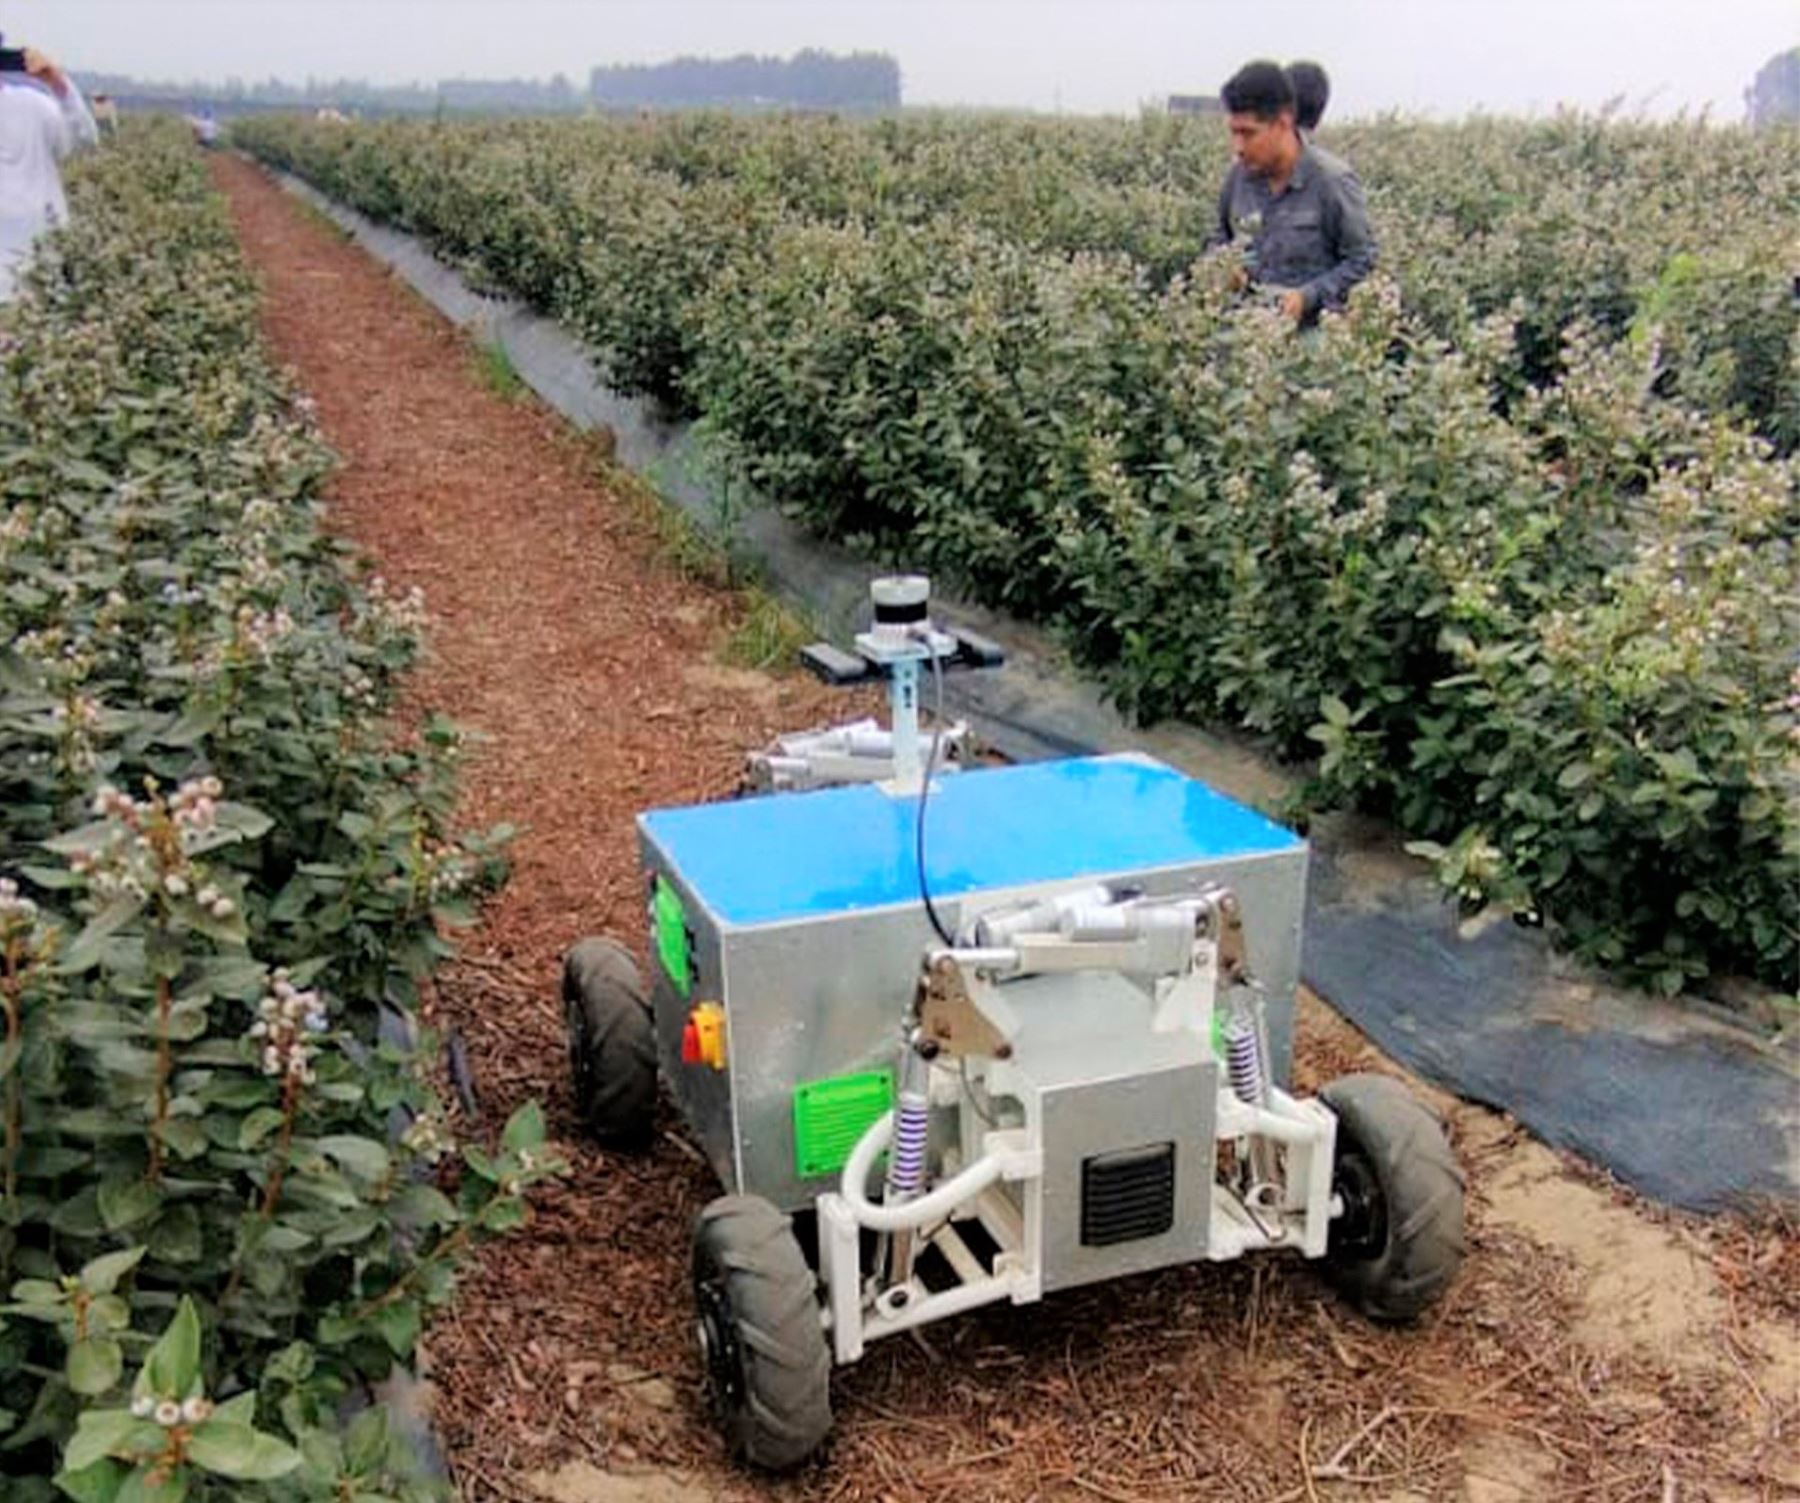 Investigadores de la Universidad Privada Antenor Orrego, en La Libertad, desarrollaron un robot de campo que ayuda a mejorar y potenciar la cosecha de arándano, el cotizado fruto que tiene gran demanda internacional. ANDINA/Difusión